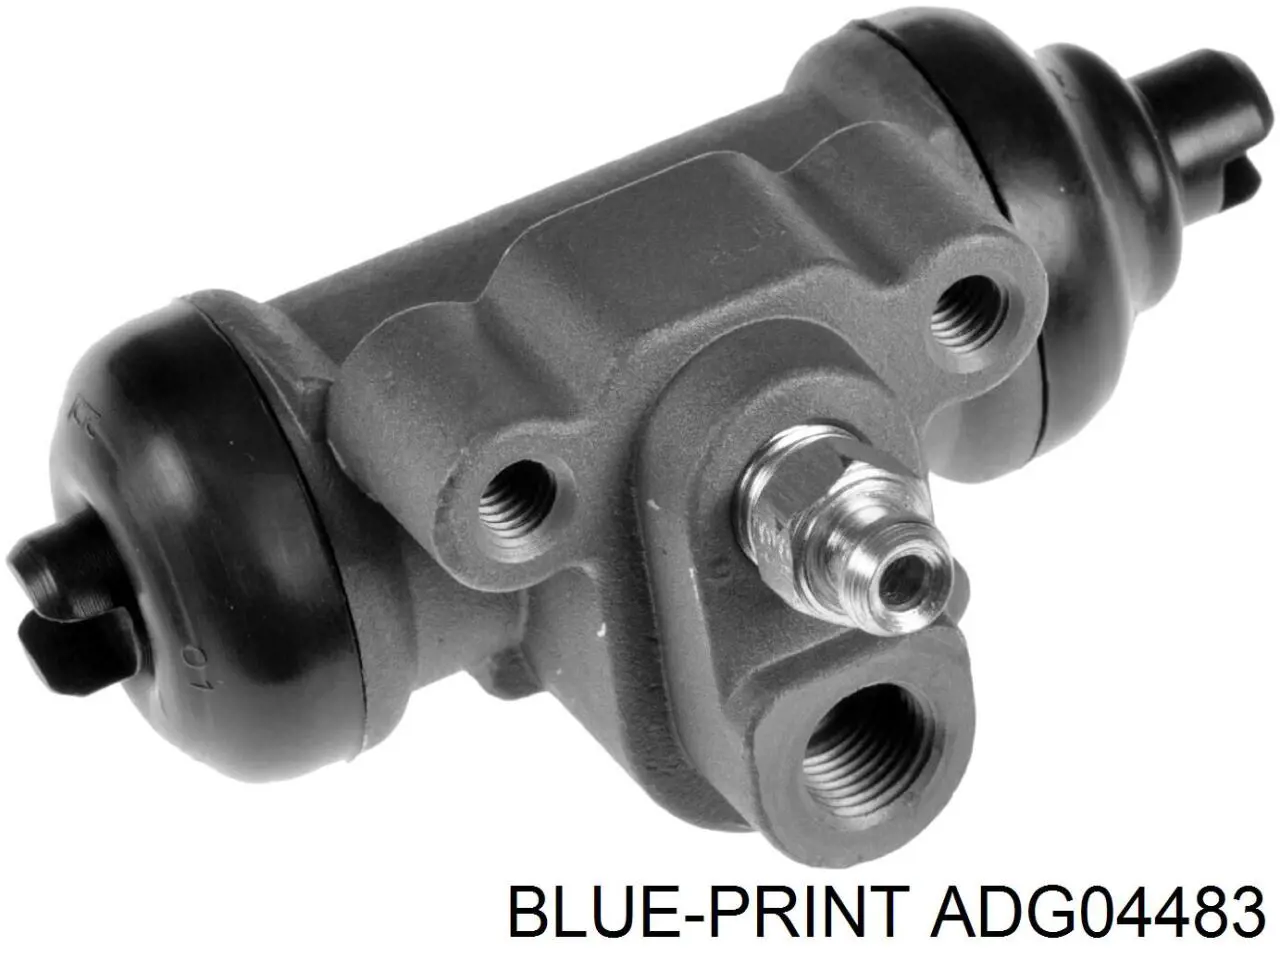 ADG04483 Blue Print цилиндр тормозной колесный рабочий задний